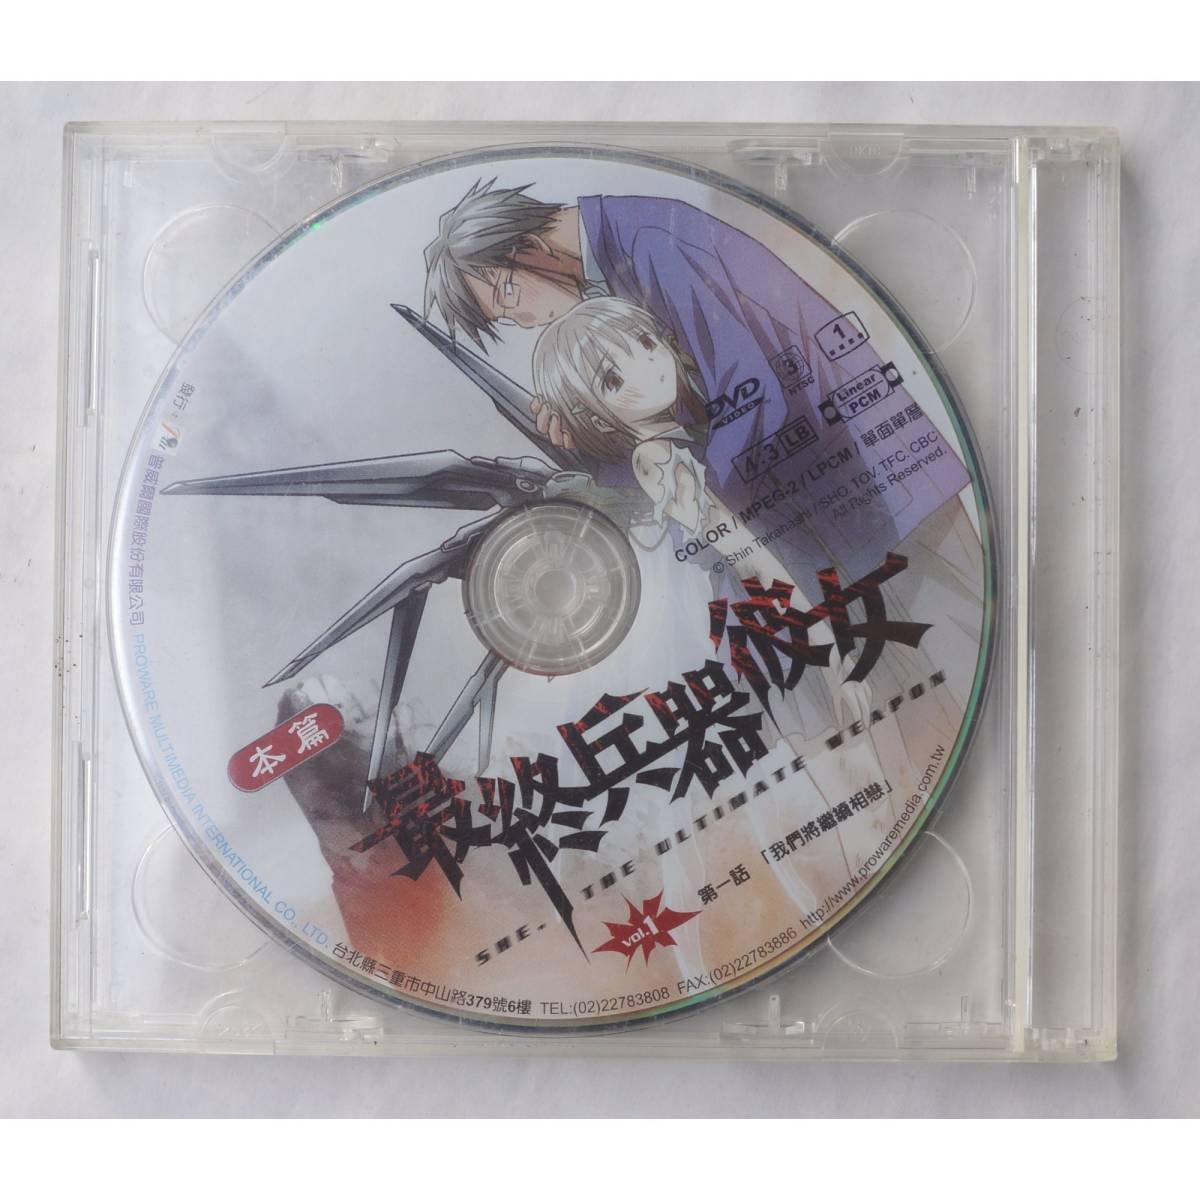 最終兵器彼女 Vol.1 2 DVDs : 本篇 & 特典_画像1